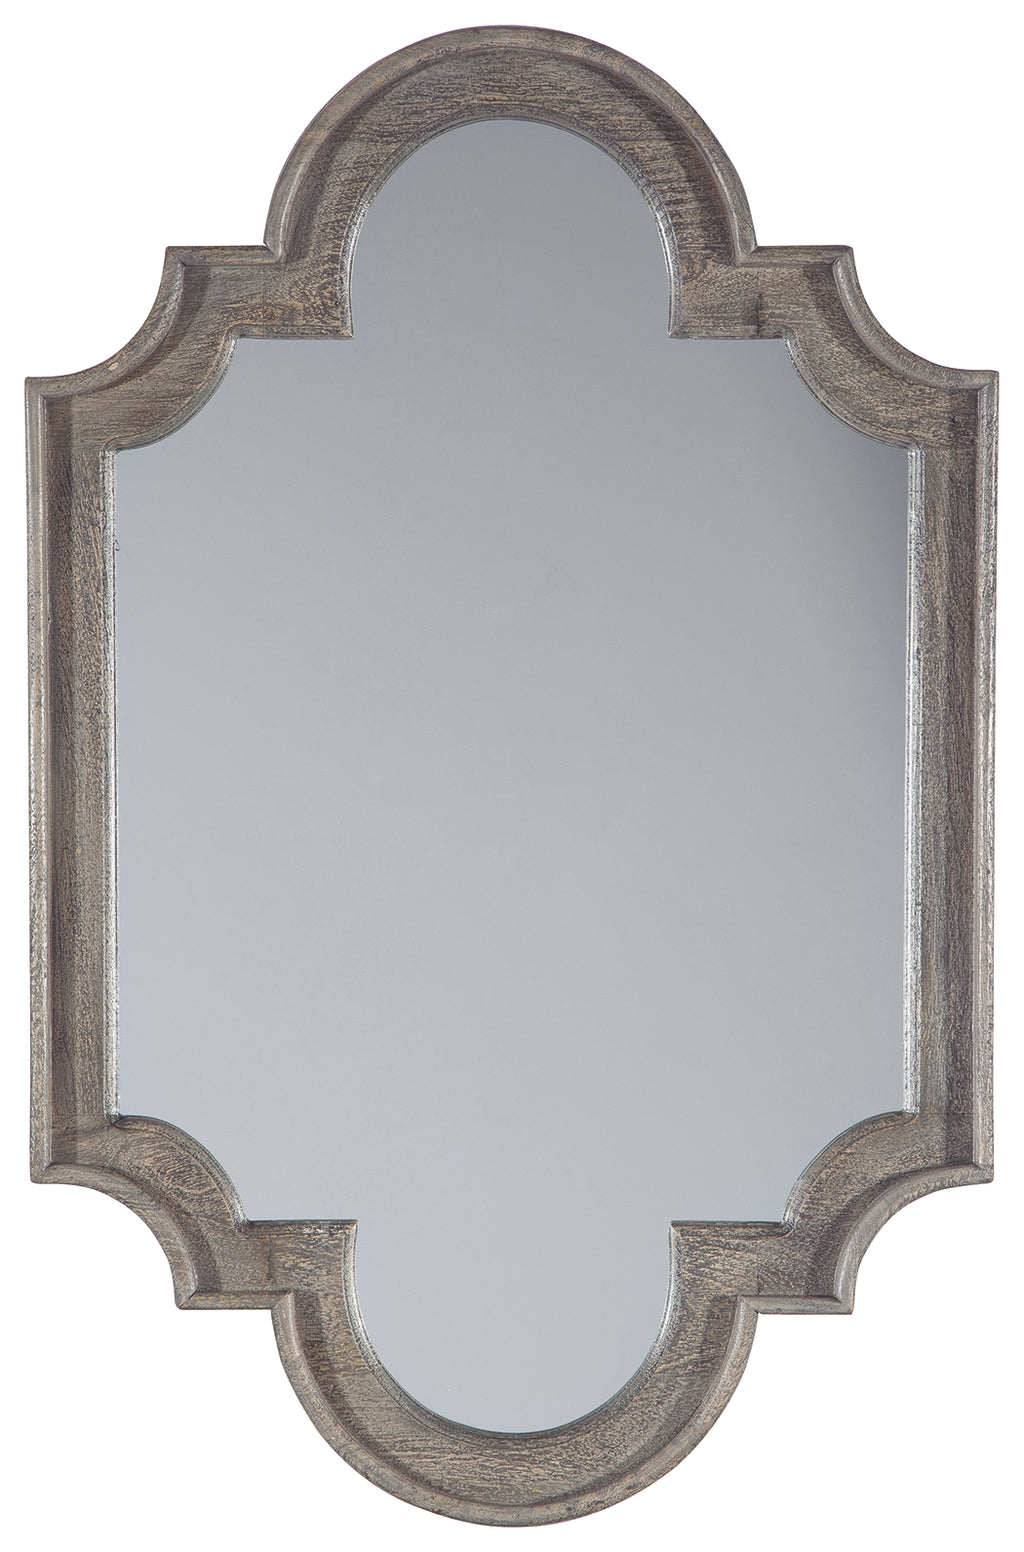 Williamette A8010160 Antique Gray Accent Mirror